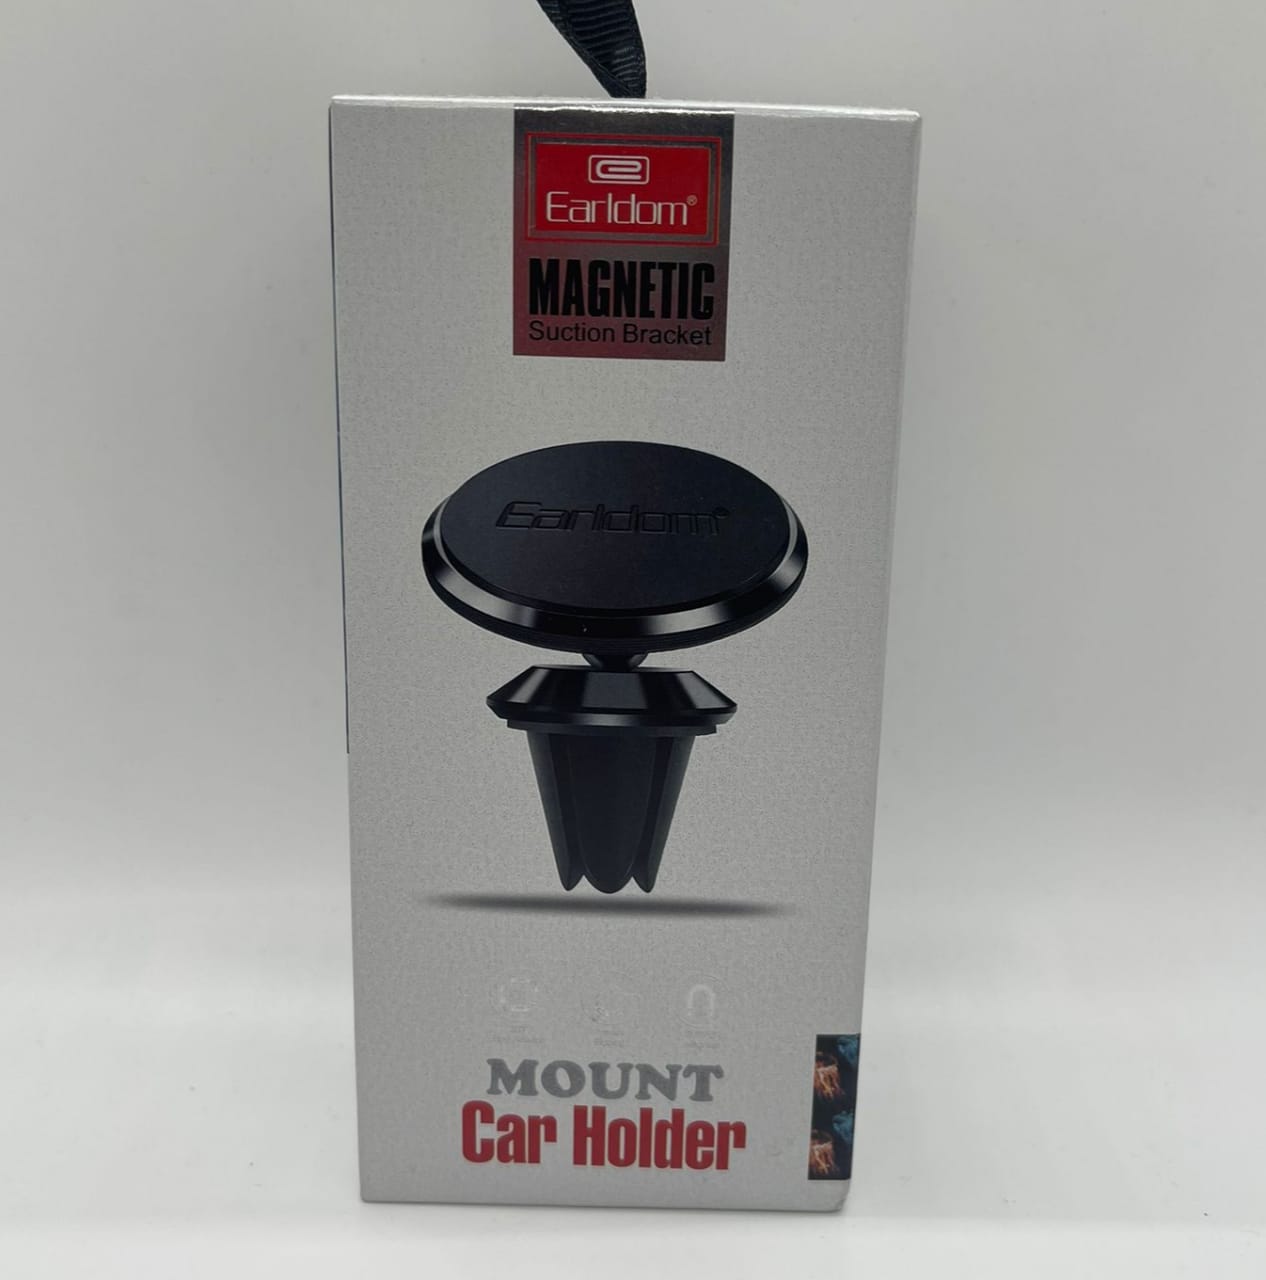 Mount Car Holder Magnetic Suction Bracket